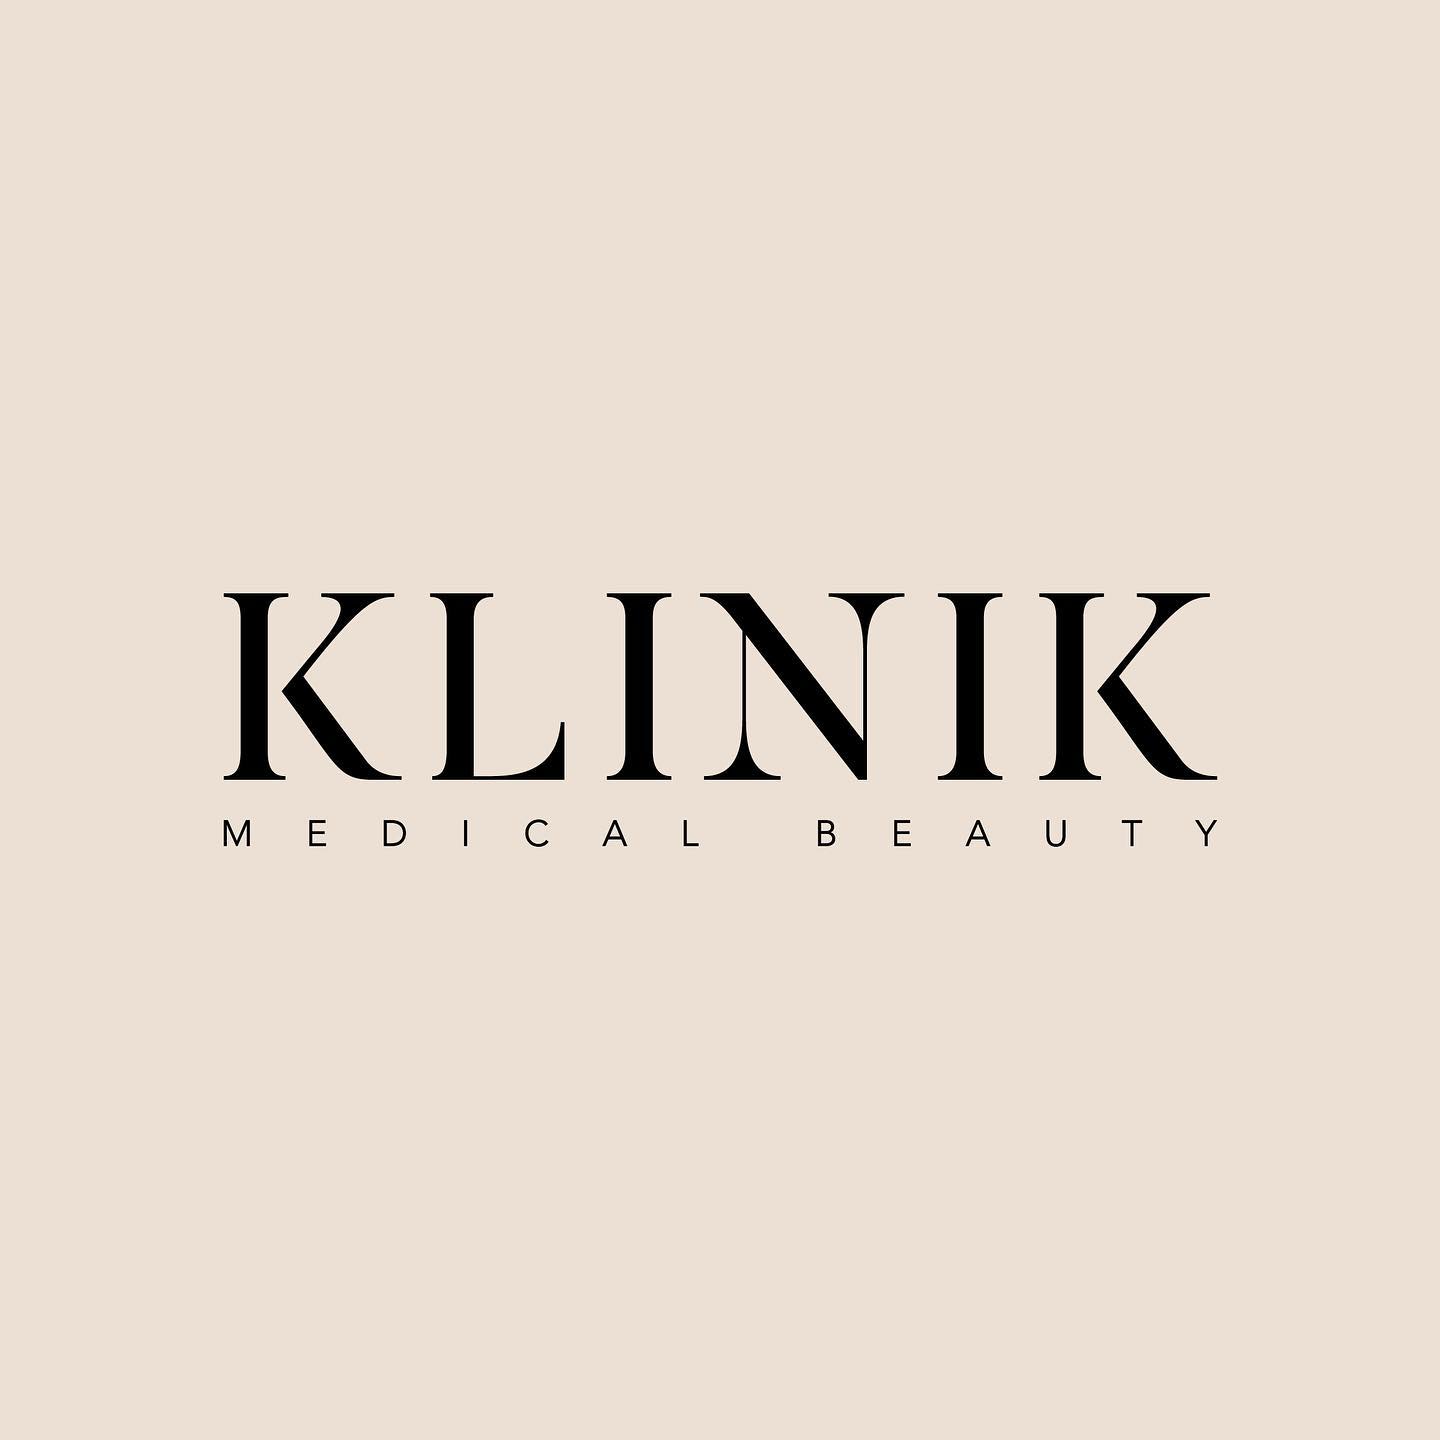 Klinik Medical Beauty